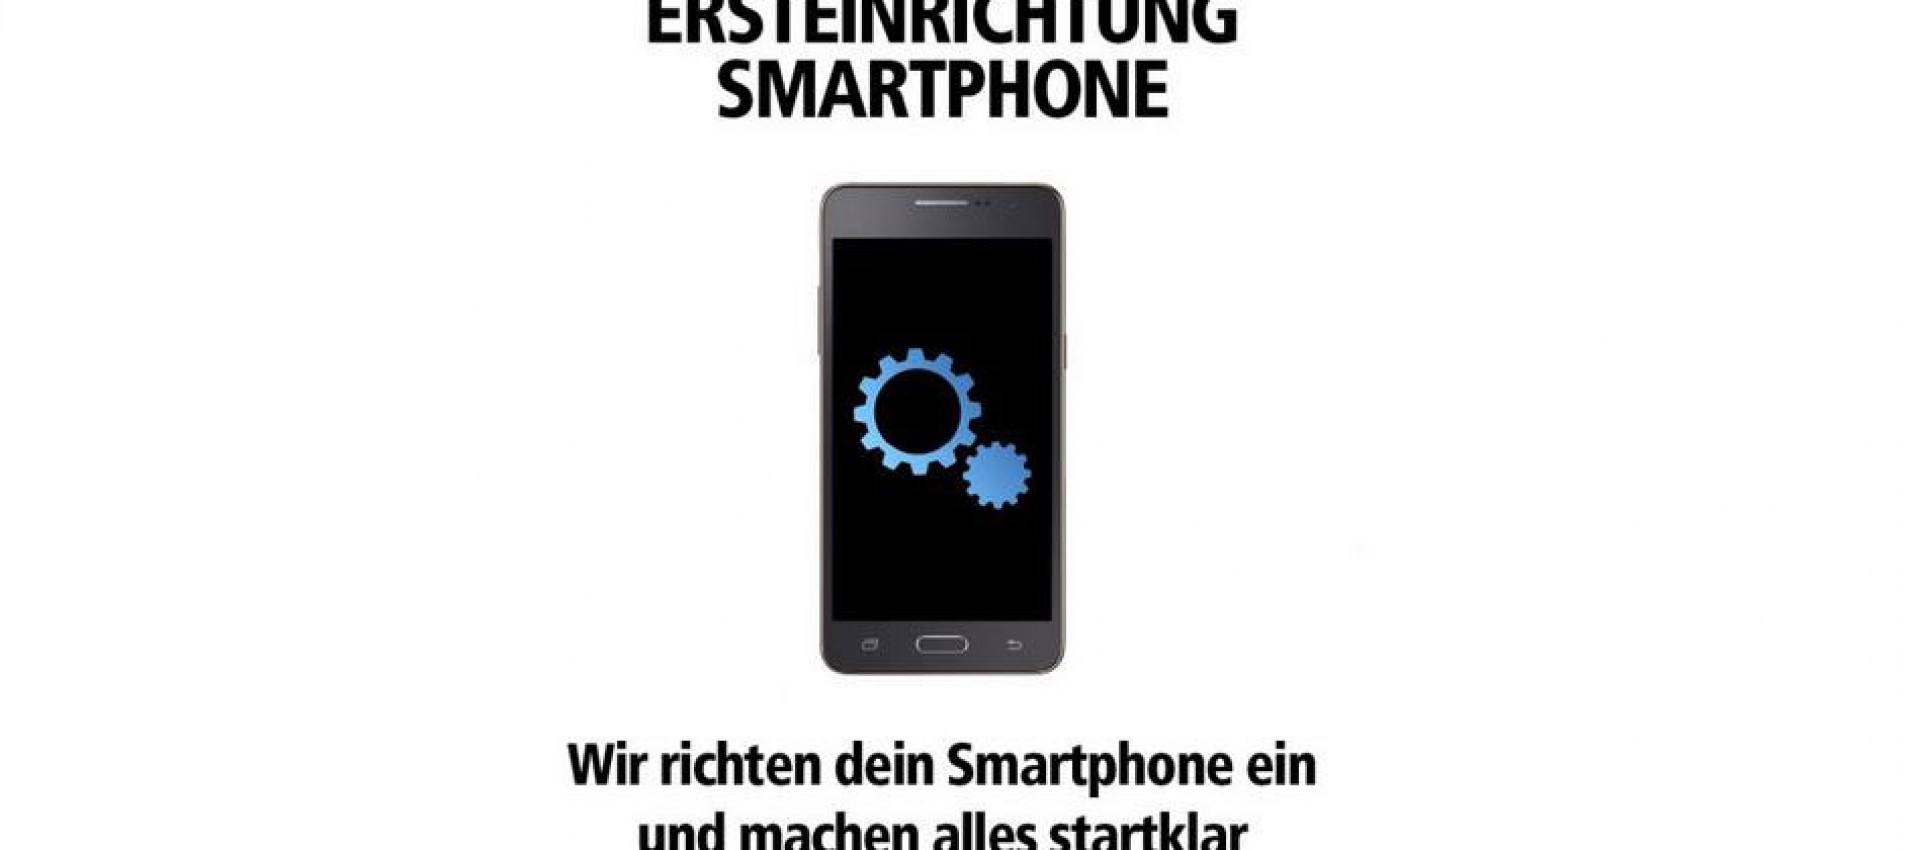 Die Smartphone Ersteinrichtung - wir helfen, Telepartner Armbruster in Offenburg.